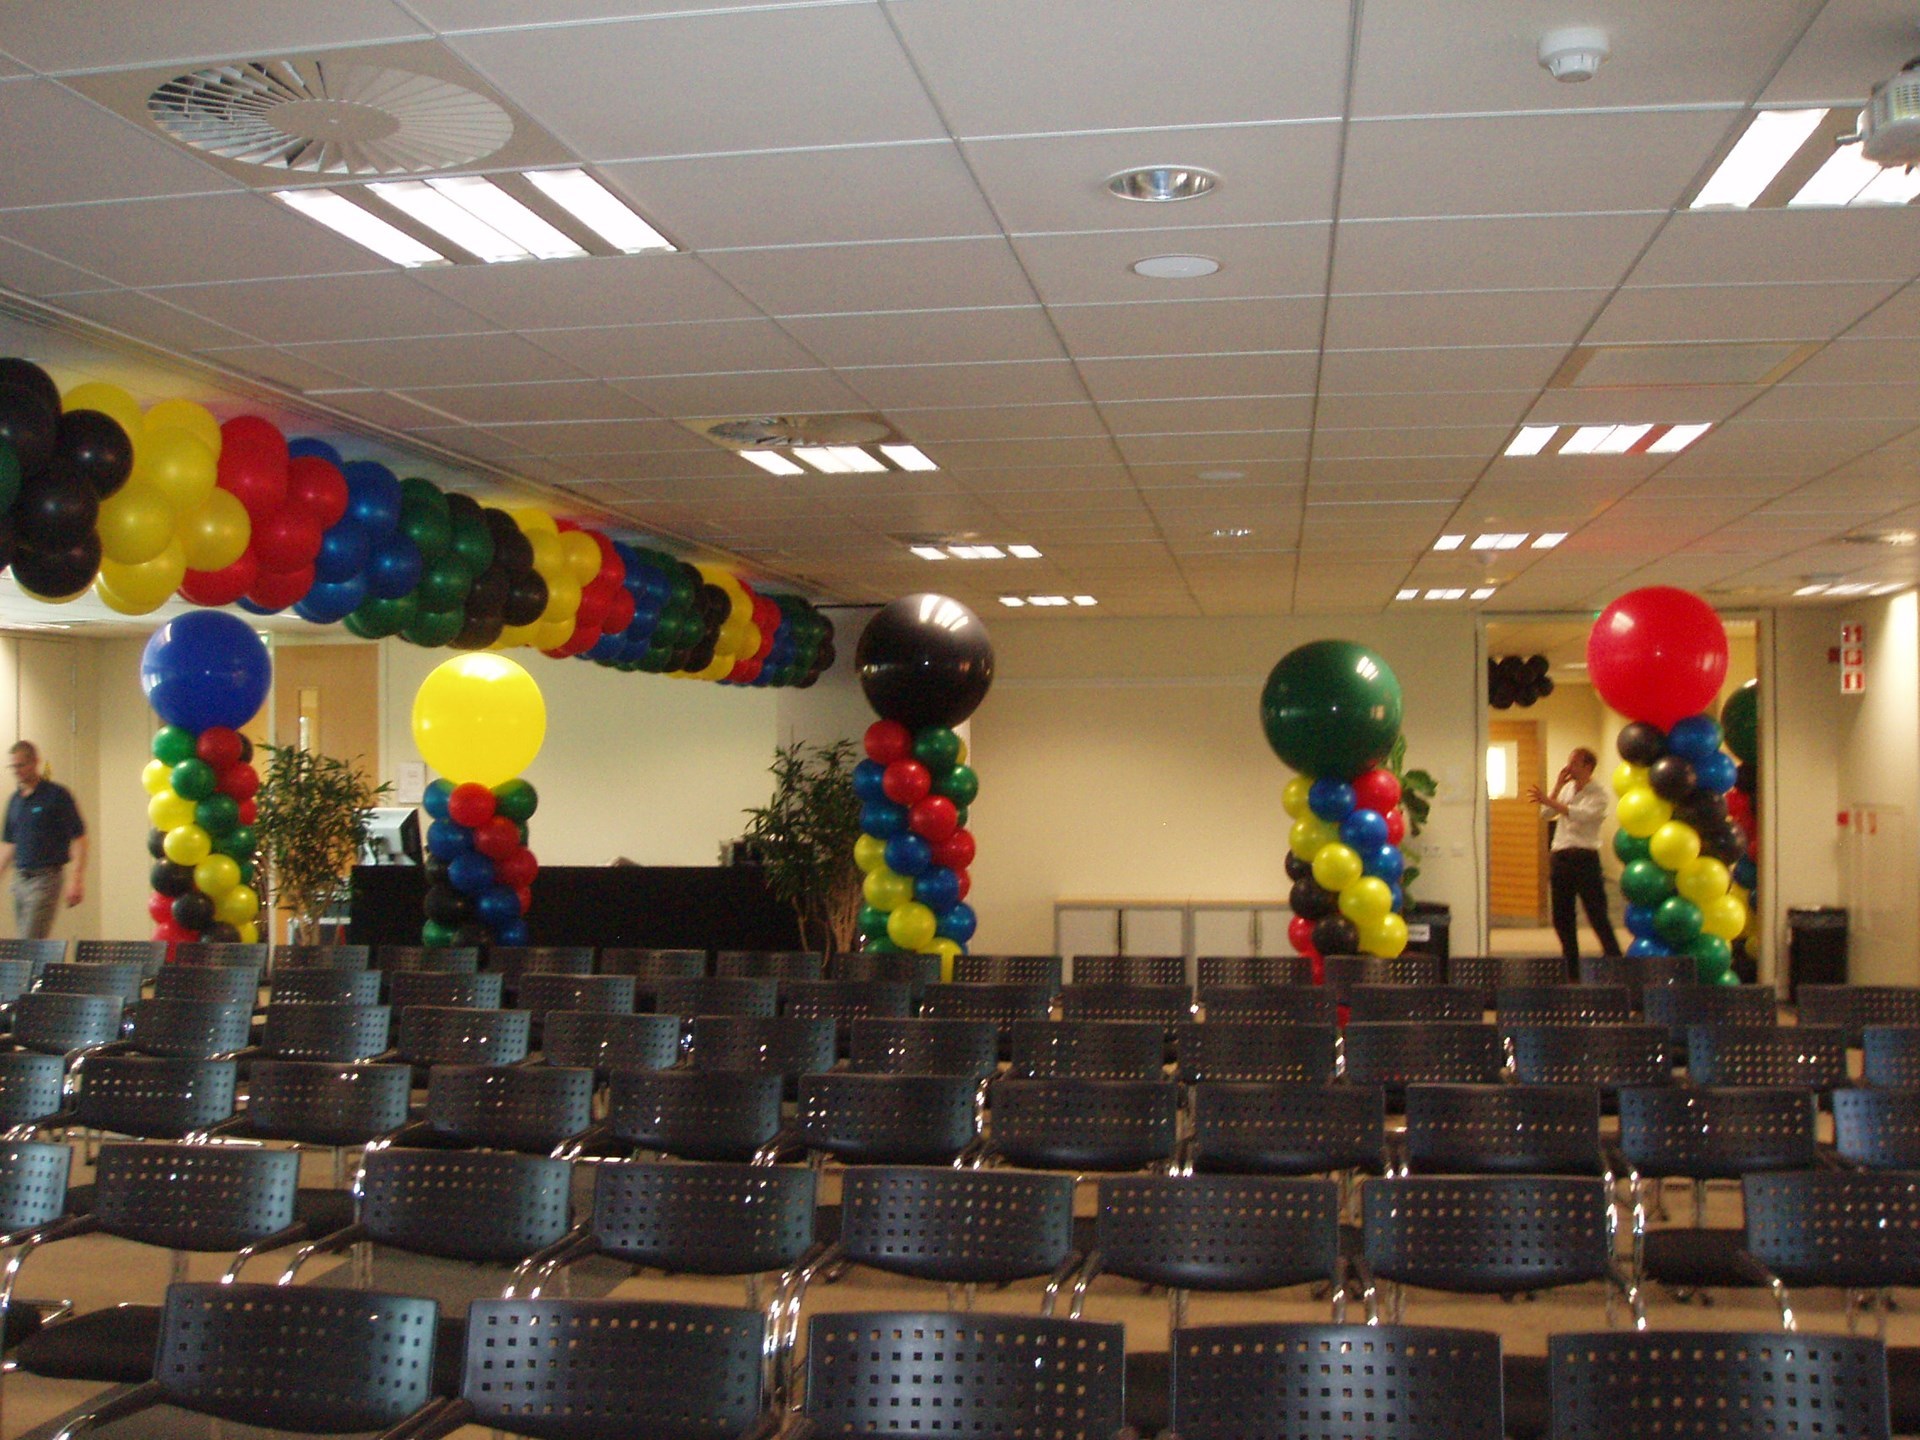 ballonnen slingers voor bedrijven demo in zaal en ballon pilaren